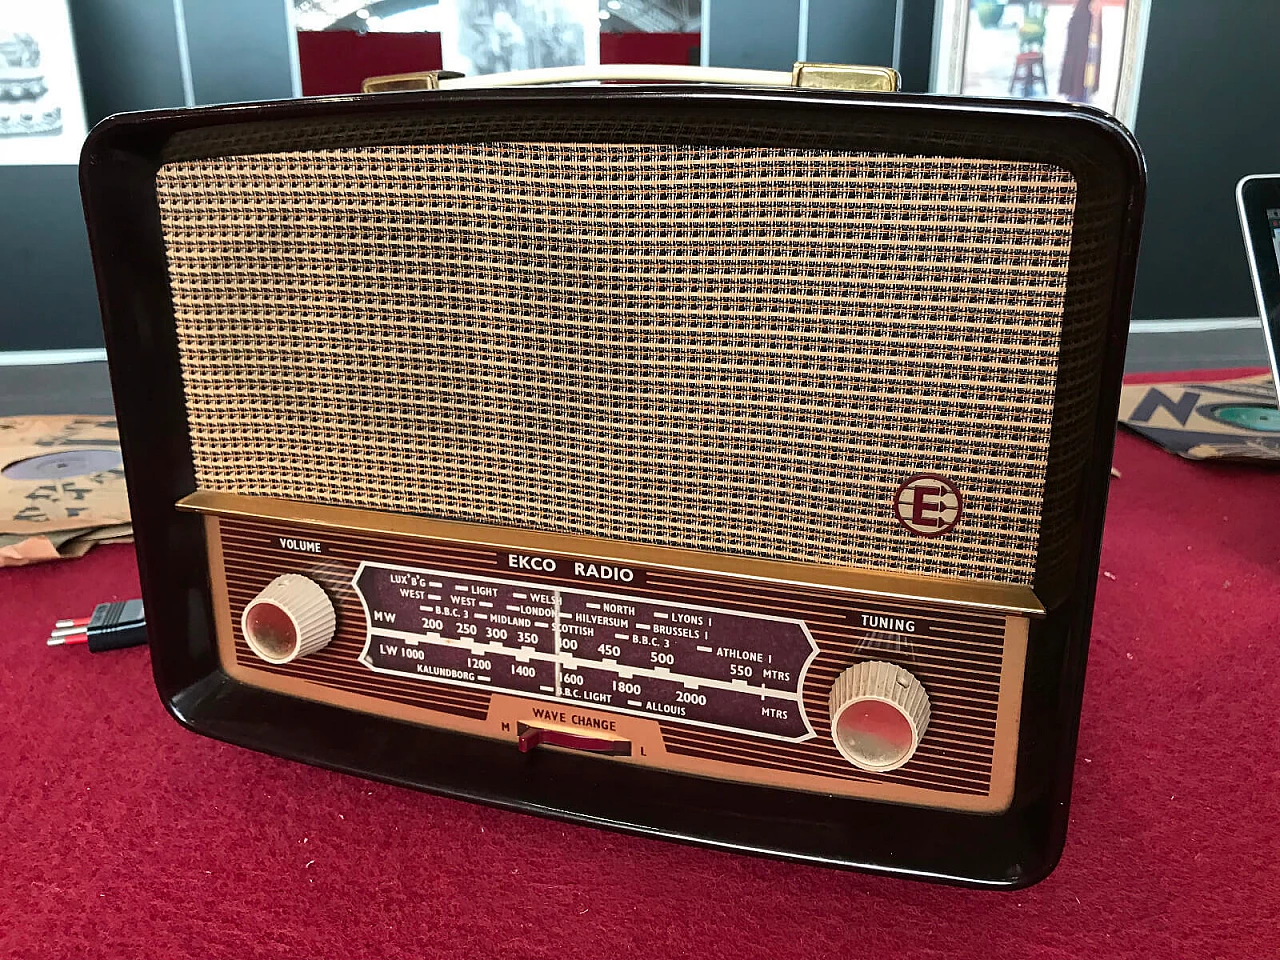 Radio inglese modello "U245" della casa Ecko anni '50 2